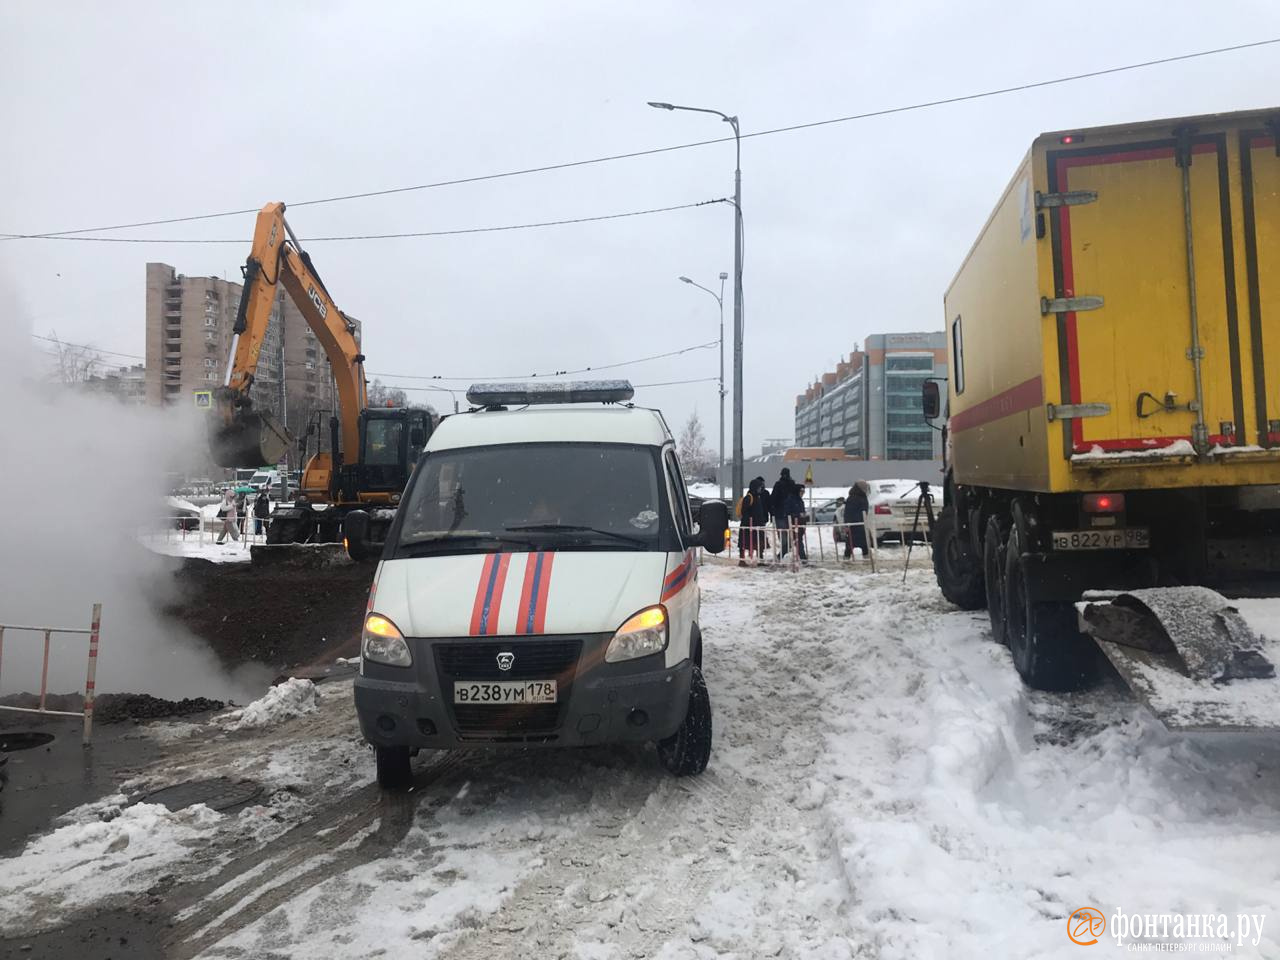 Третьи сутки без тепла. Петербуржцев возмутил затянувшийся ремонт на проспекте Большевиков